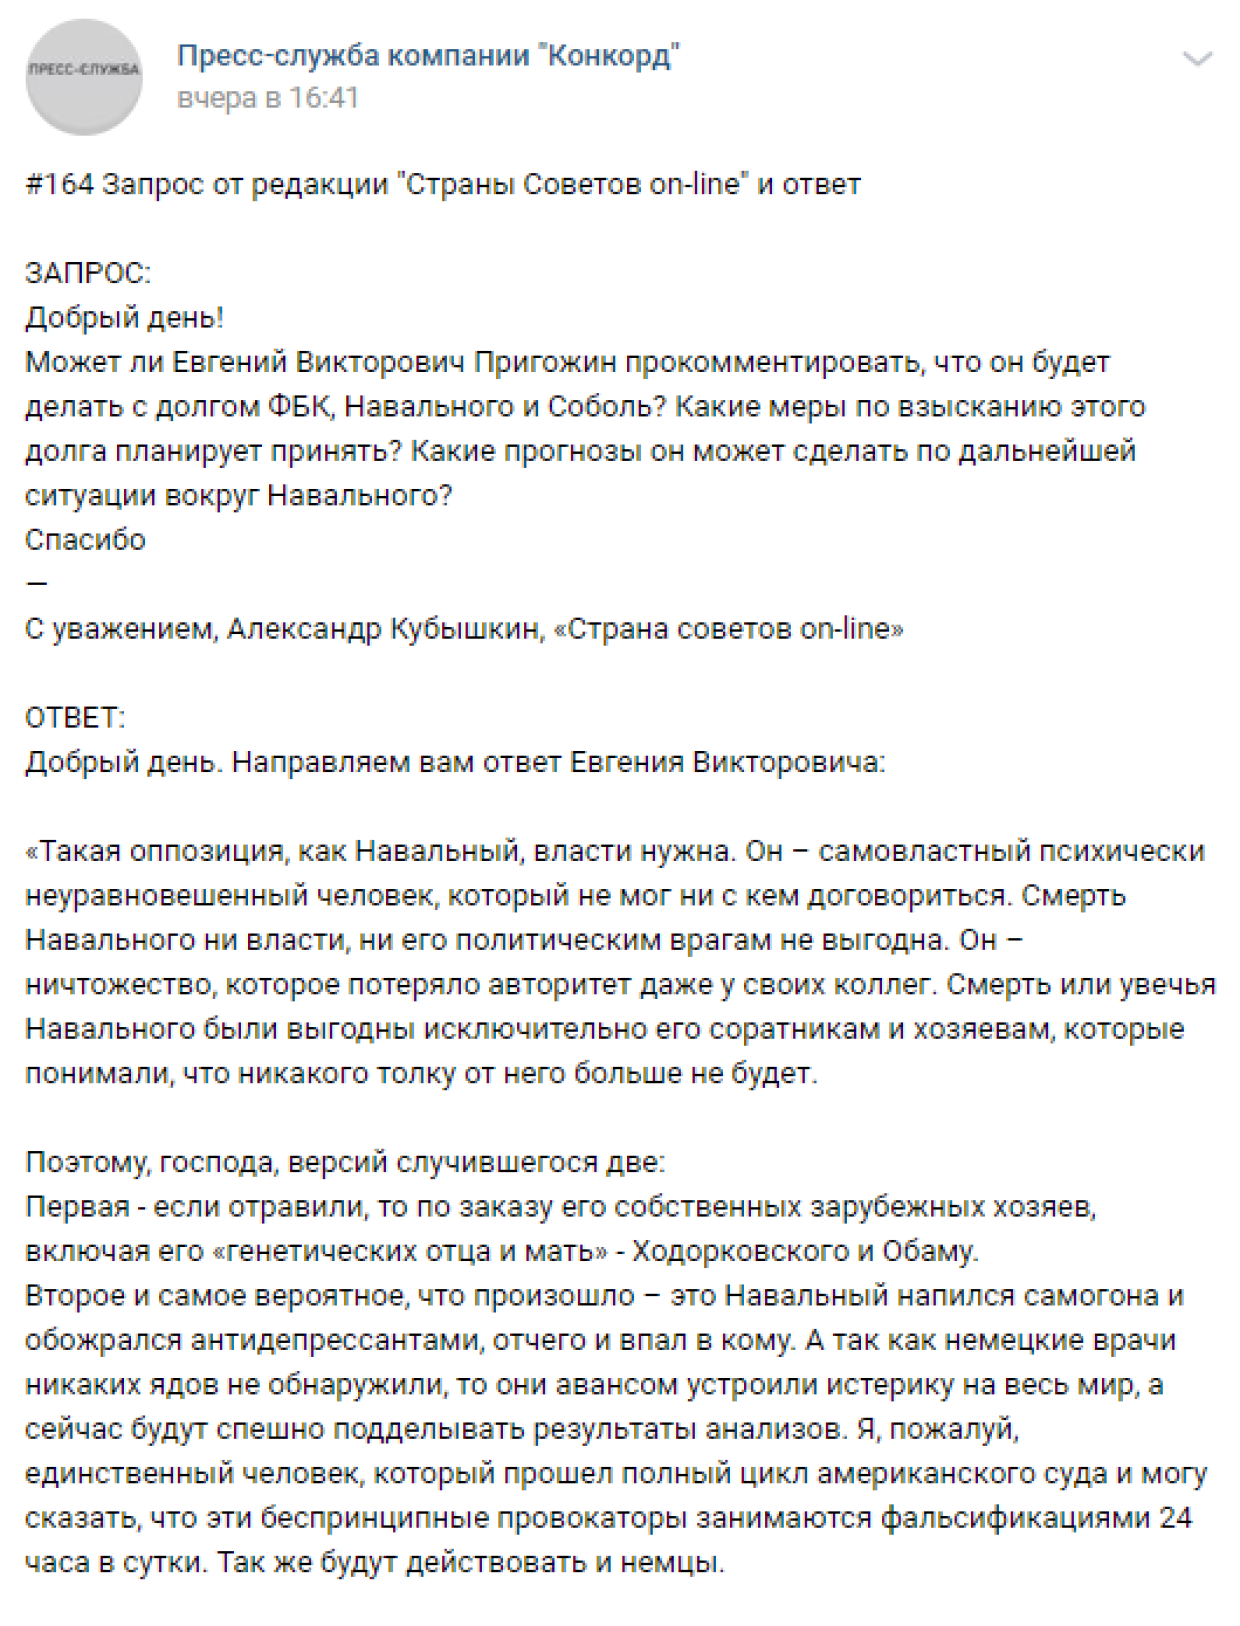 Лурье объяснил, почему врачи ФРГ «тянут» с диагнозом Навального